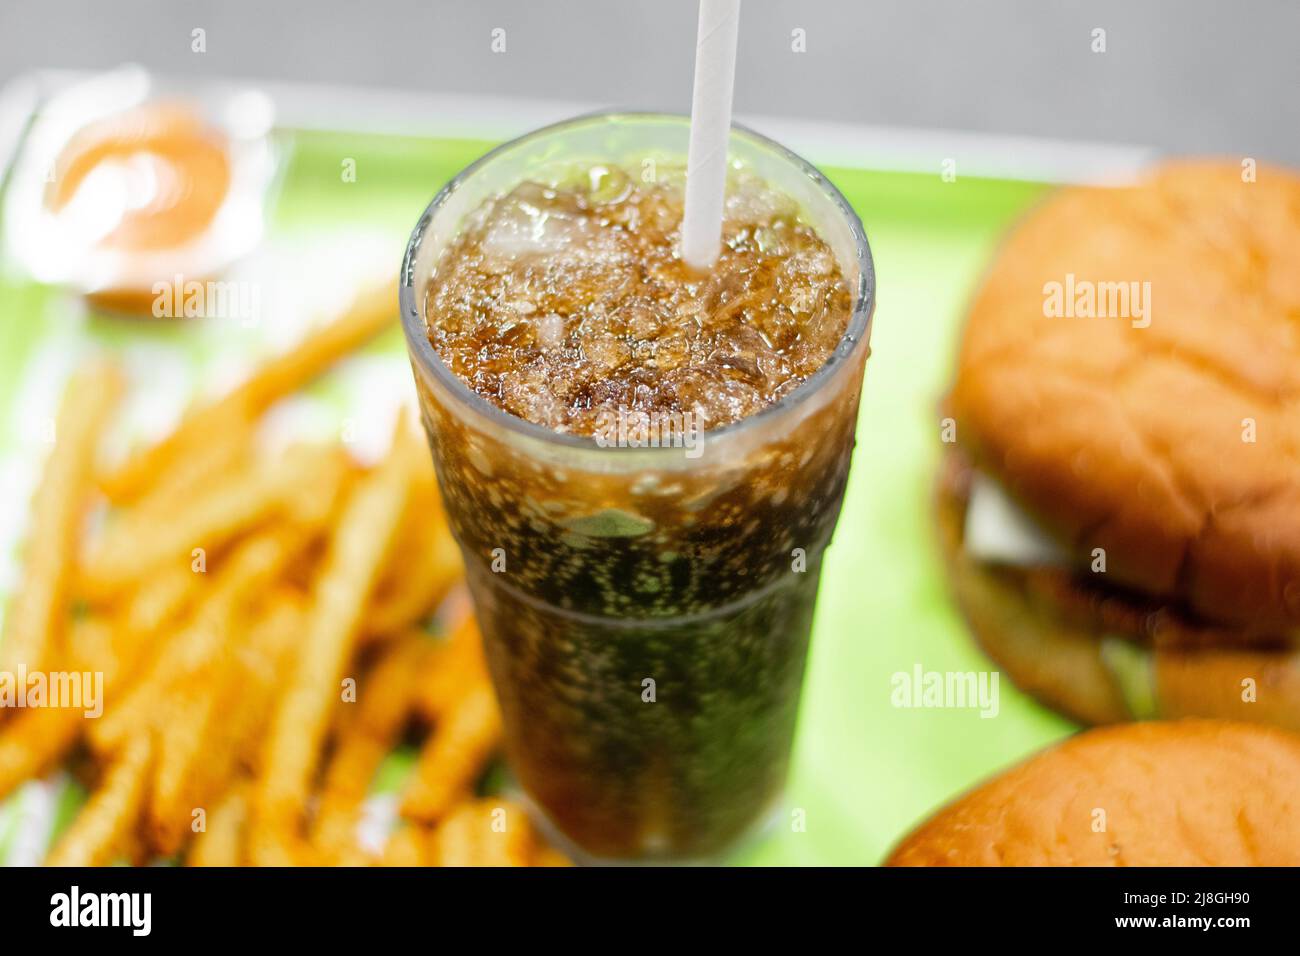 Ein Bild von Burger, Pommes und Cola mit Eis in einem Glas aus einem Fast-Food-Restaurant Stockfoto